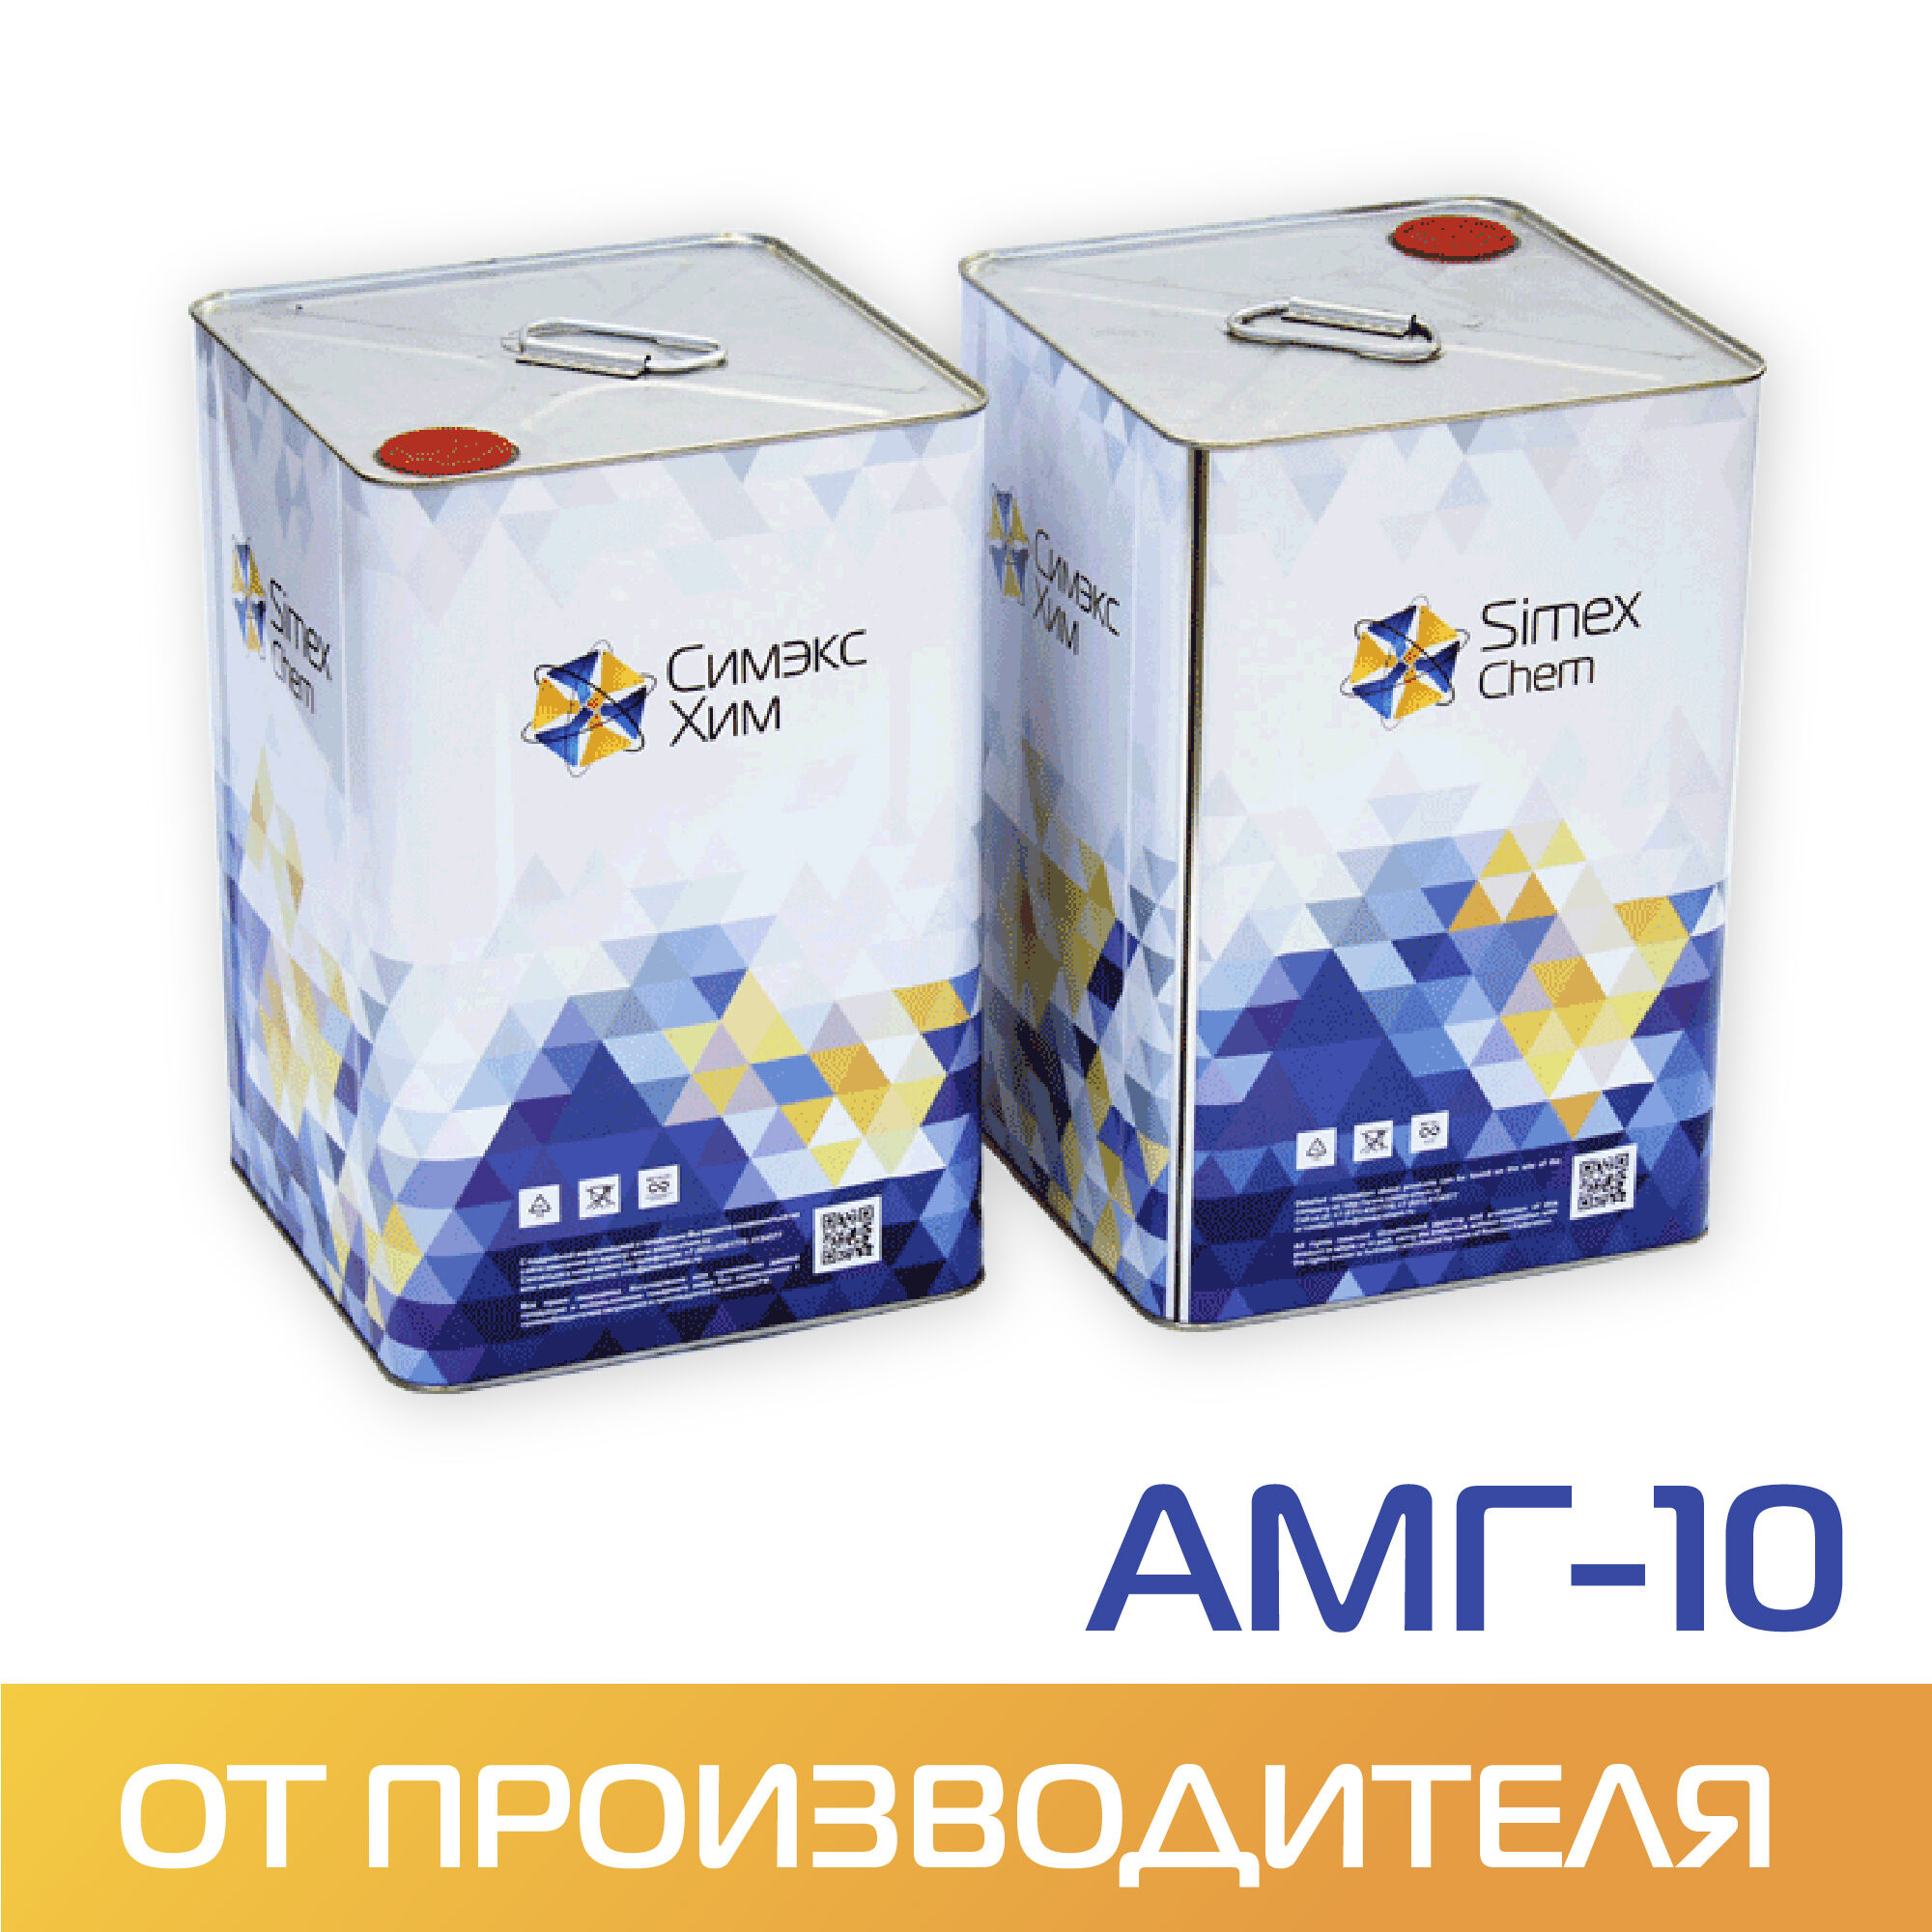 Масло гидравлическое АМГ-10 ГОСТ 6794-2017 14 кг